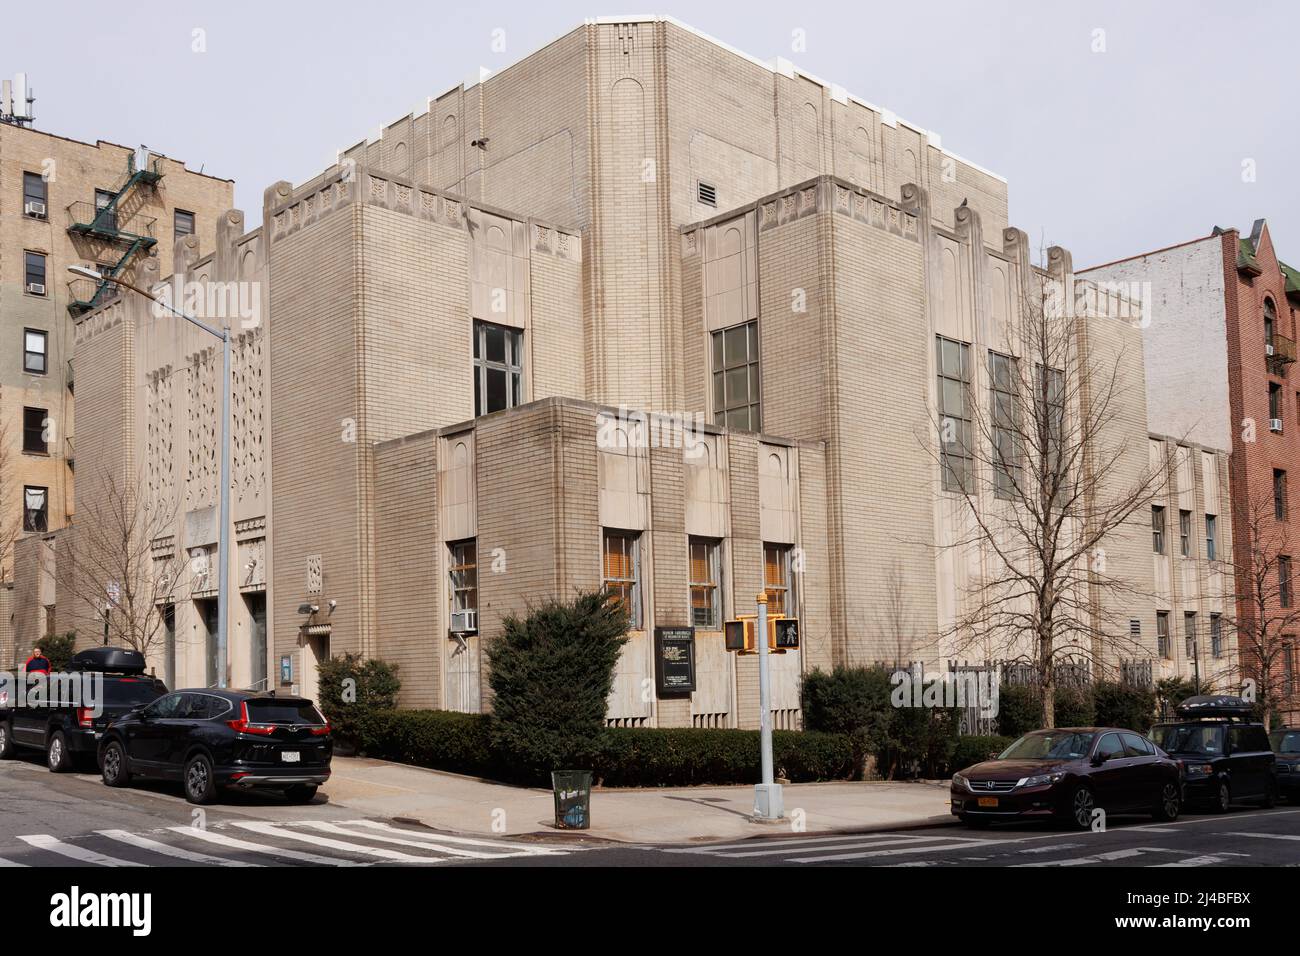 El Tabernáculo Hebreo de Washington Heights, una congregación o sinagoga Judía de Reforma en el Norte de Manhattan, Nueva York, fundada en 1905 Foto de stock